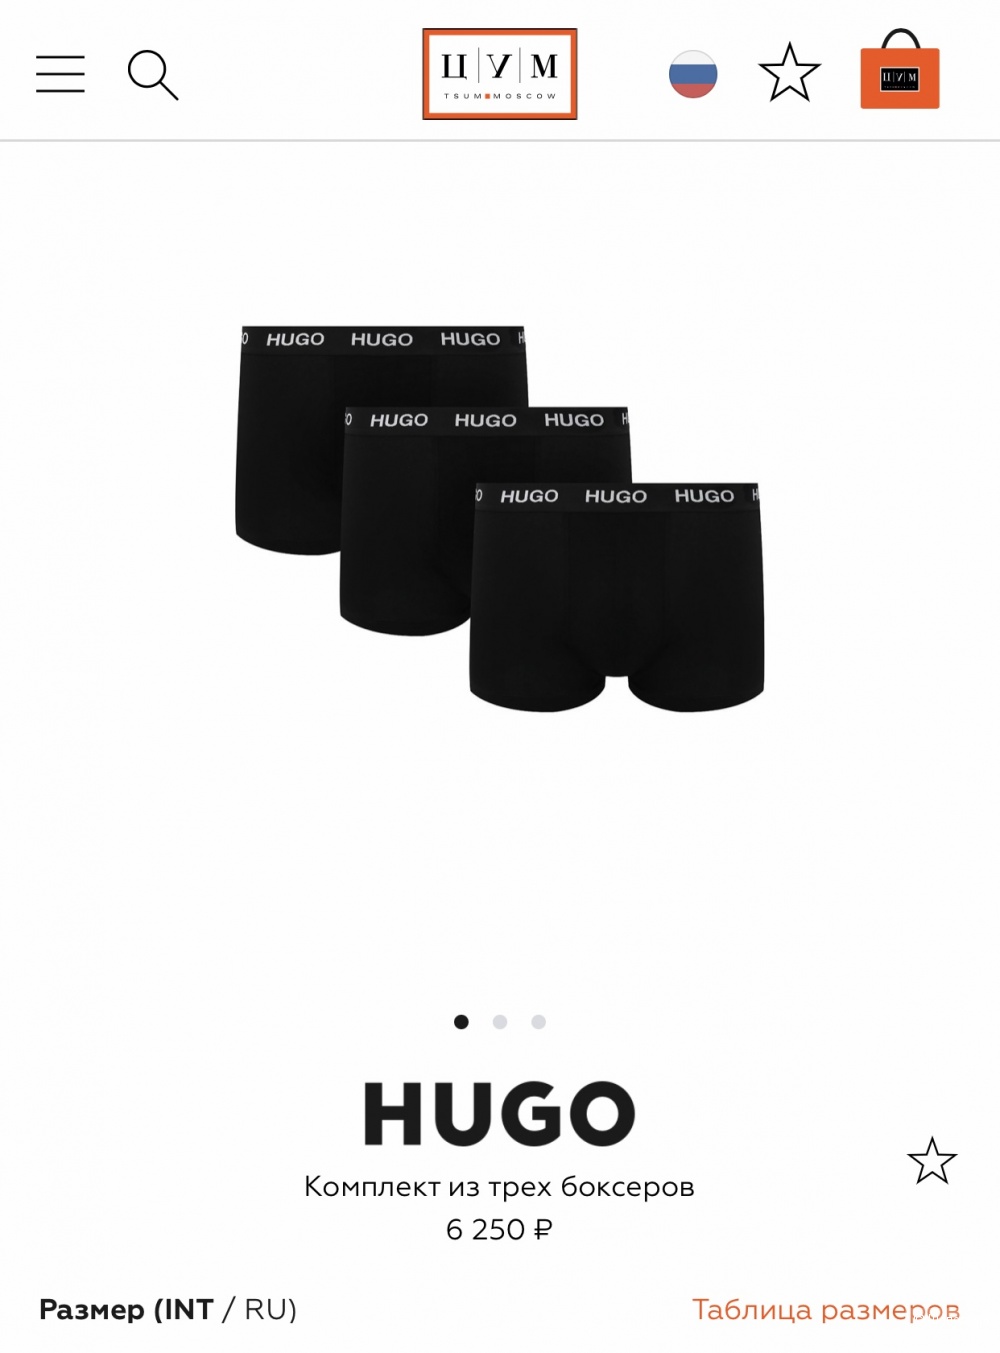 Hugo комплект трусов